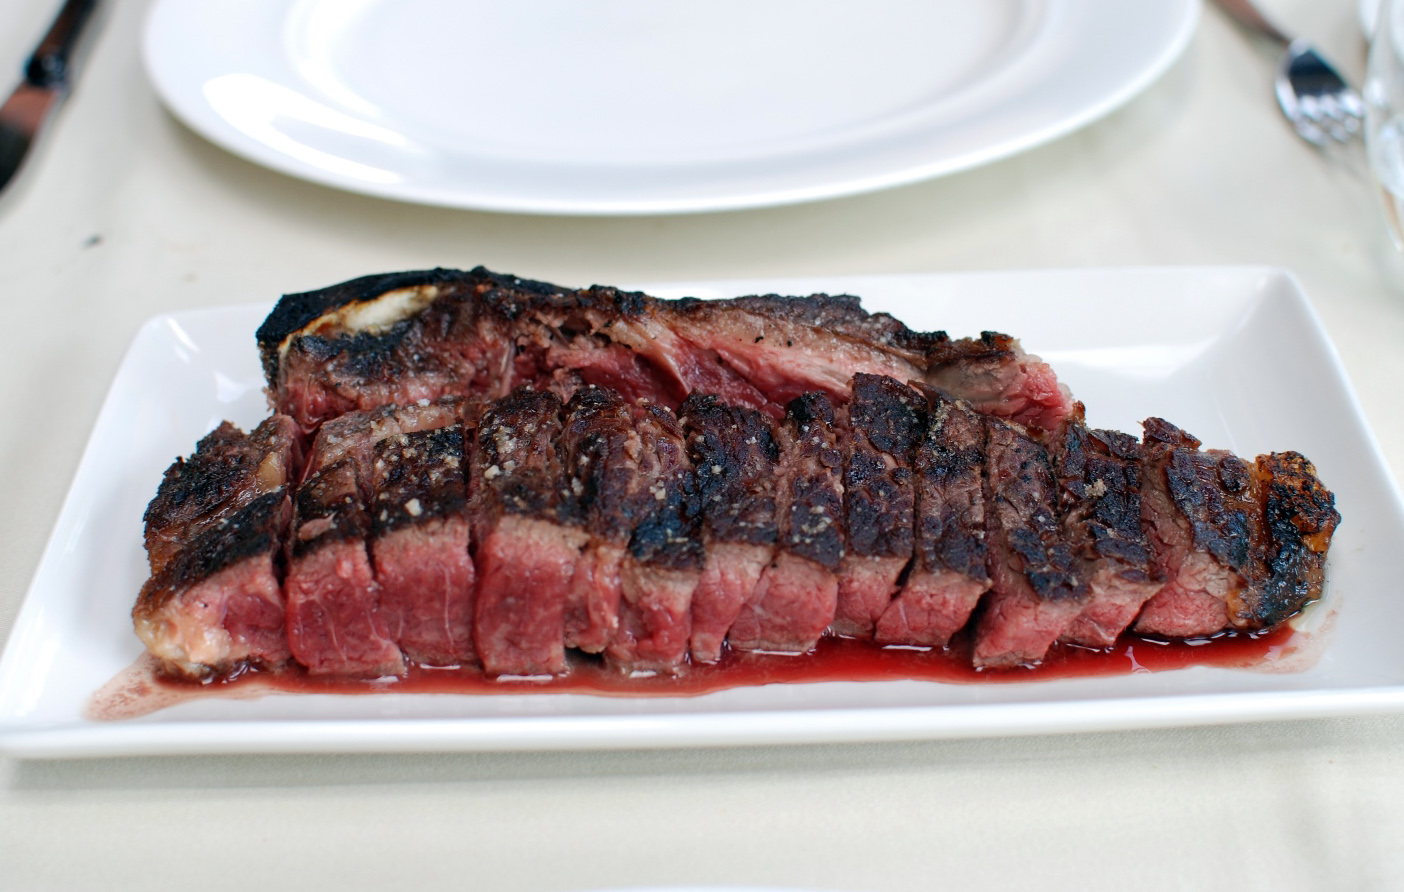 Steak steak steak at Asador Etxebarri | NY Food Journal